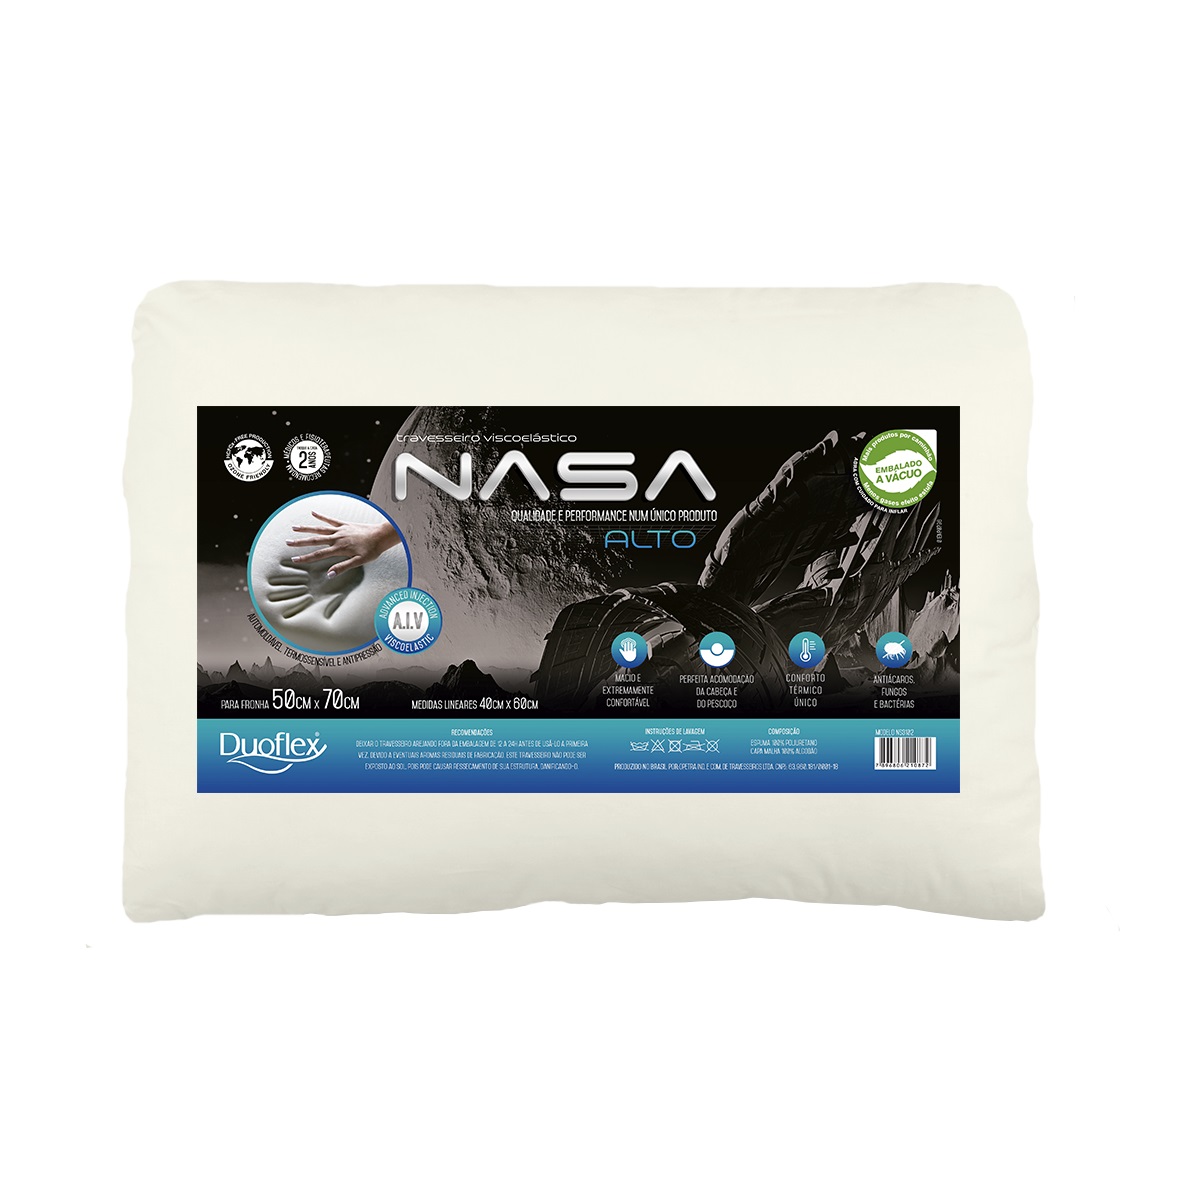 Travesseiro NASA-X Alto Duoflex com Capa 100% Algodão